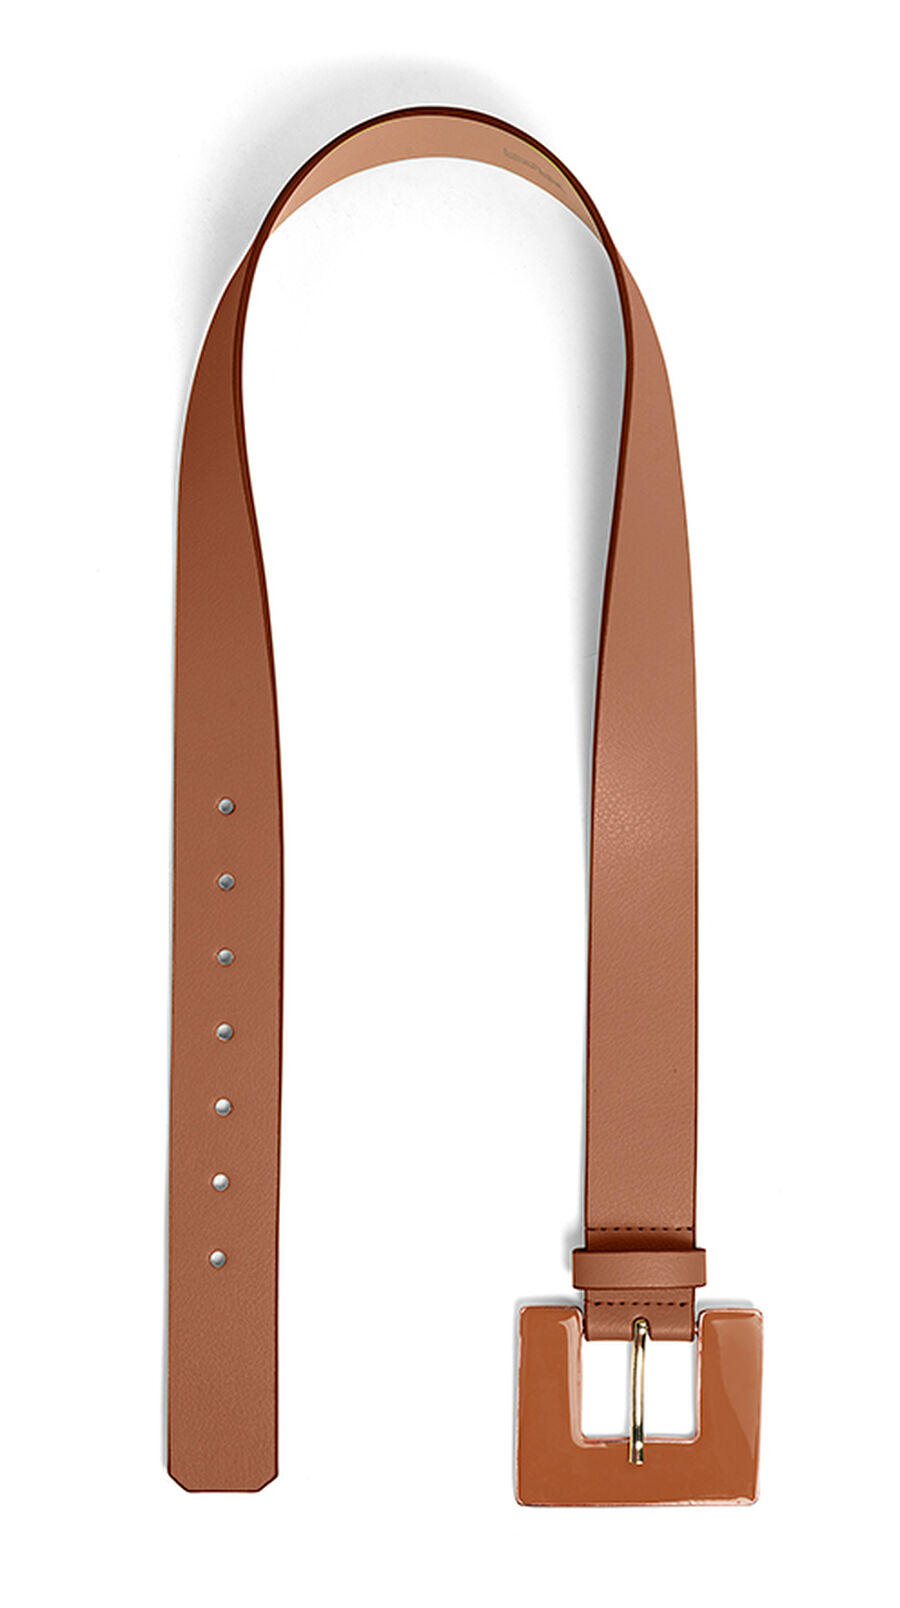 Cinto de Cintura Médio com Fivela Quadrada, , large.